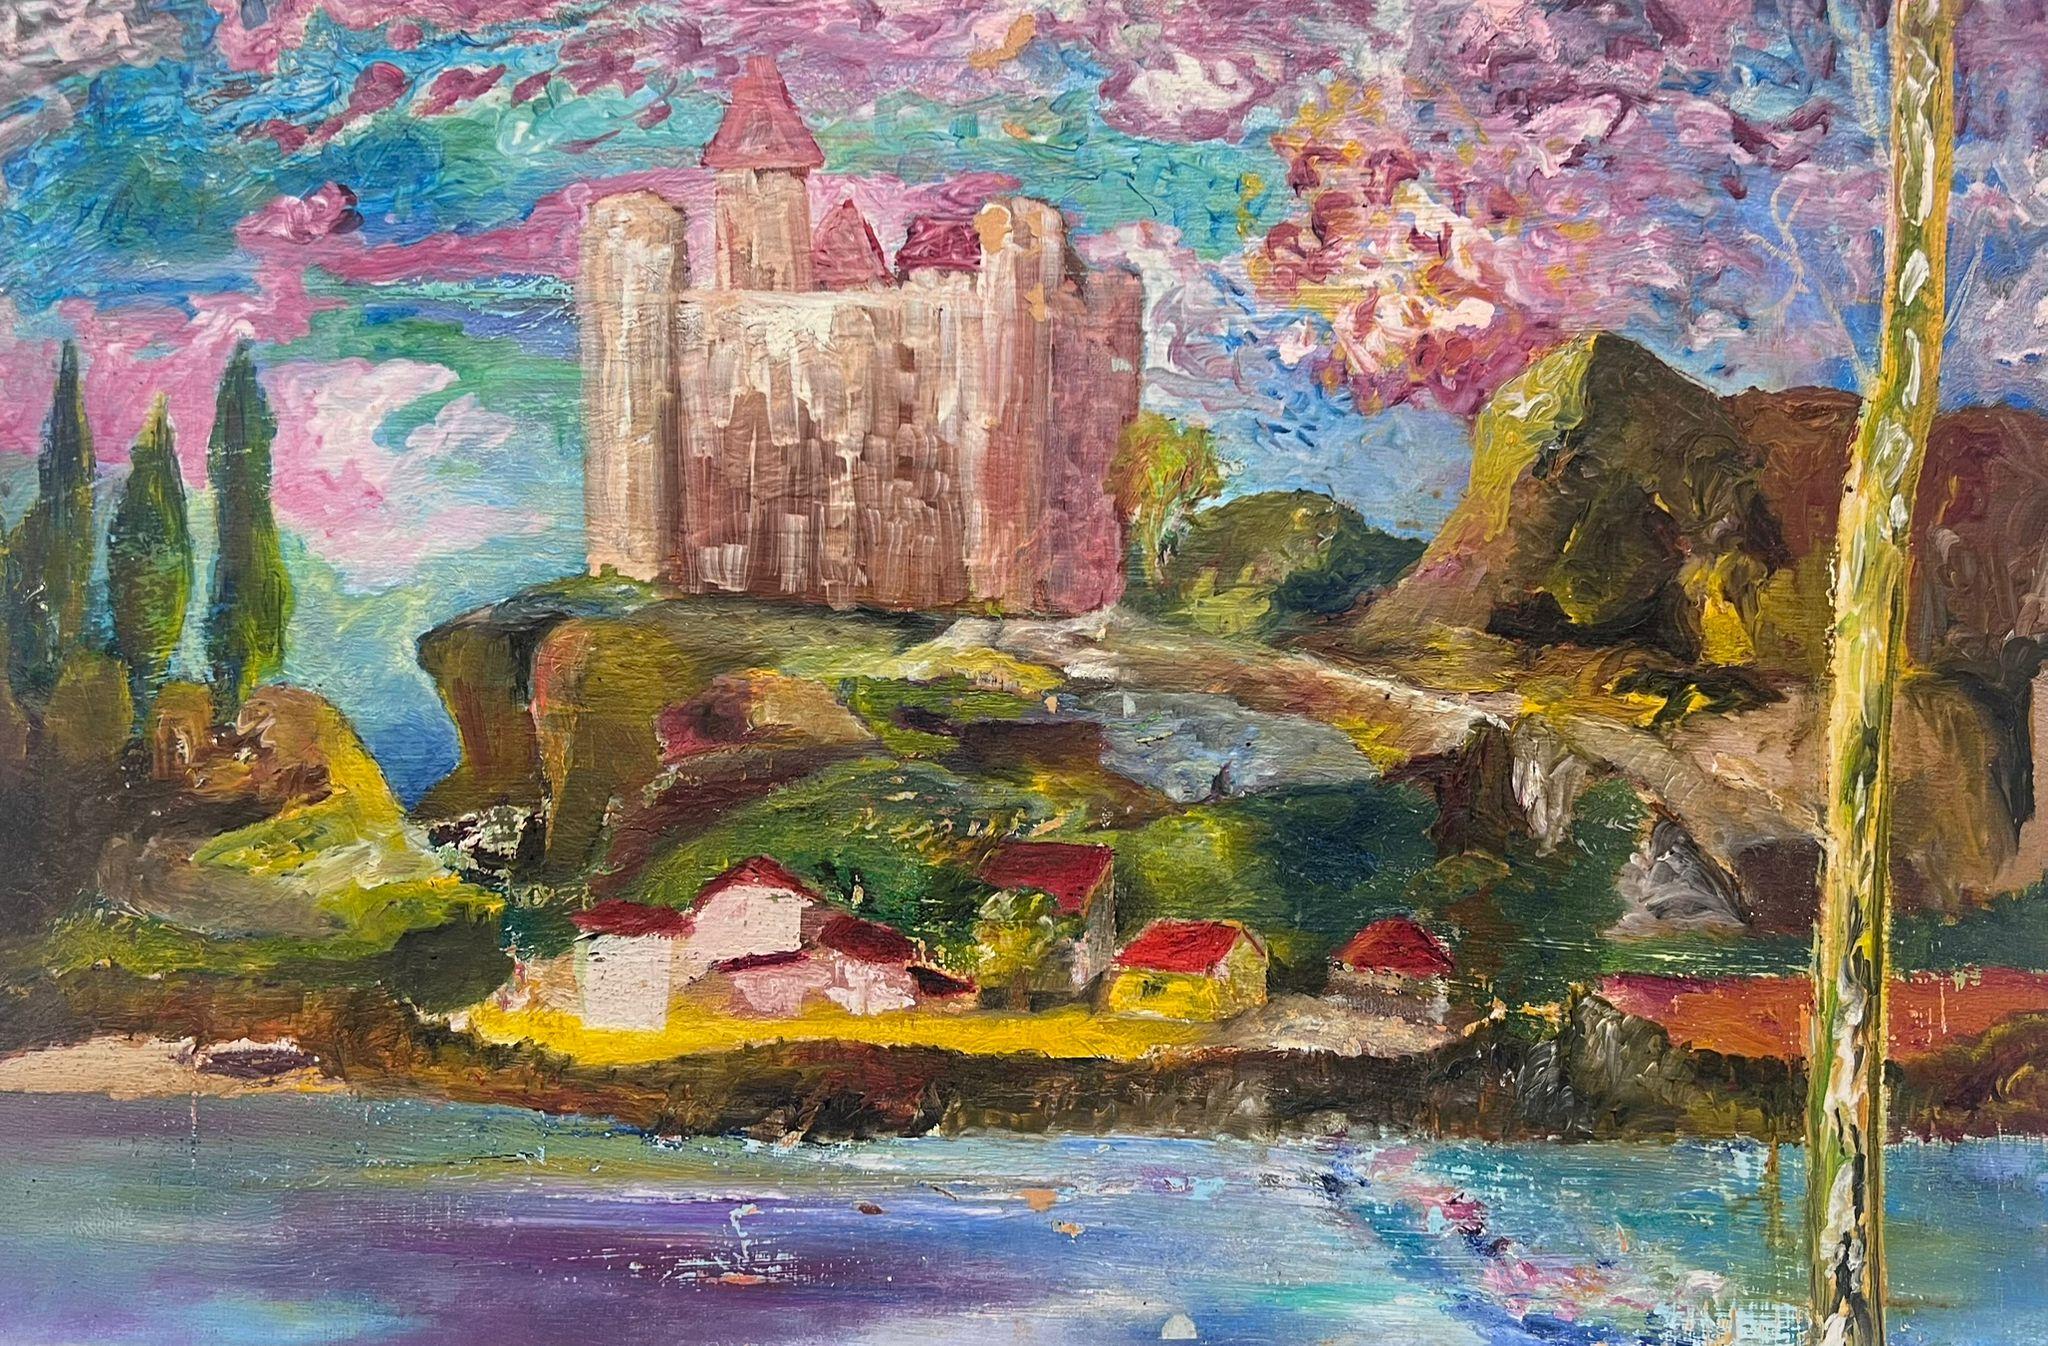 Paysage fantastique expressionniste français Château rose au-dessus d'un village magique